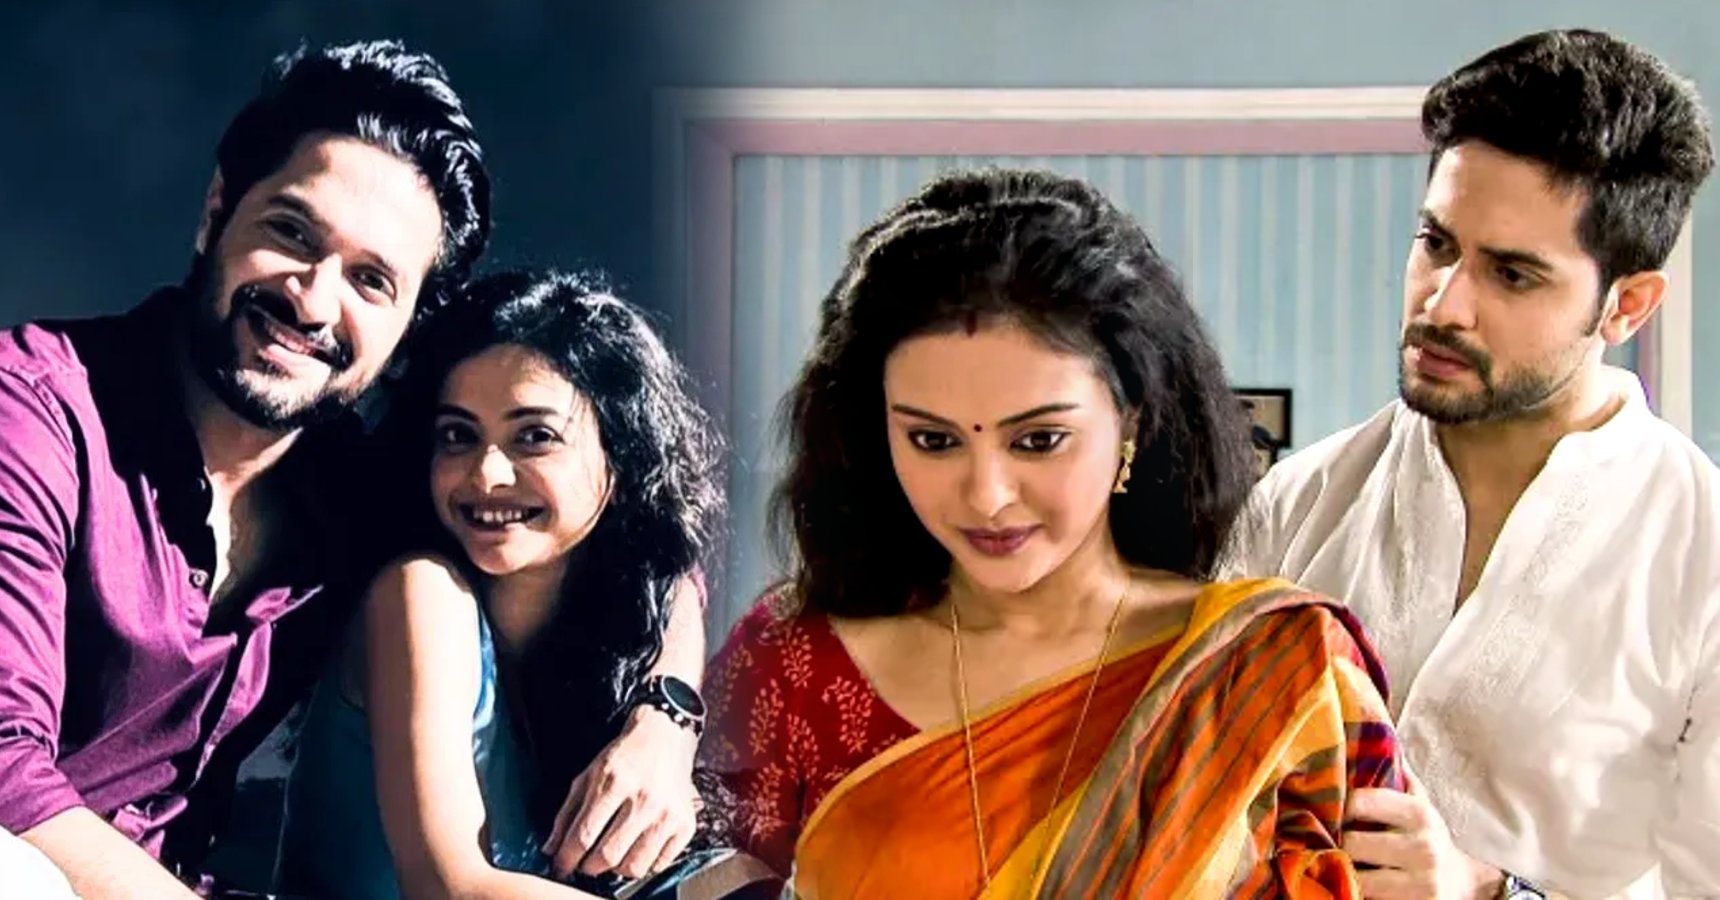 Solanki Roy Vikram Chatterjee Tollywood Movie Sohorer Ushnotomo Dine releasing on 30th June